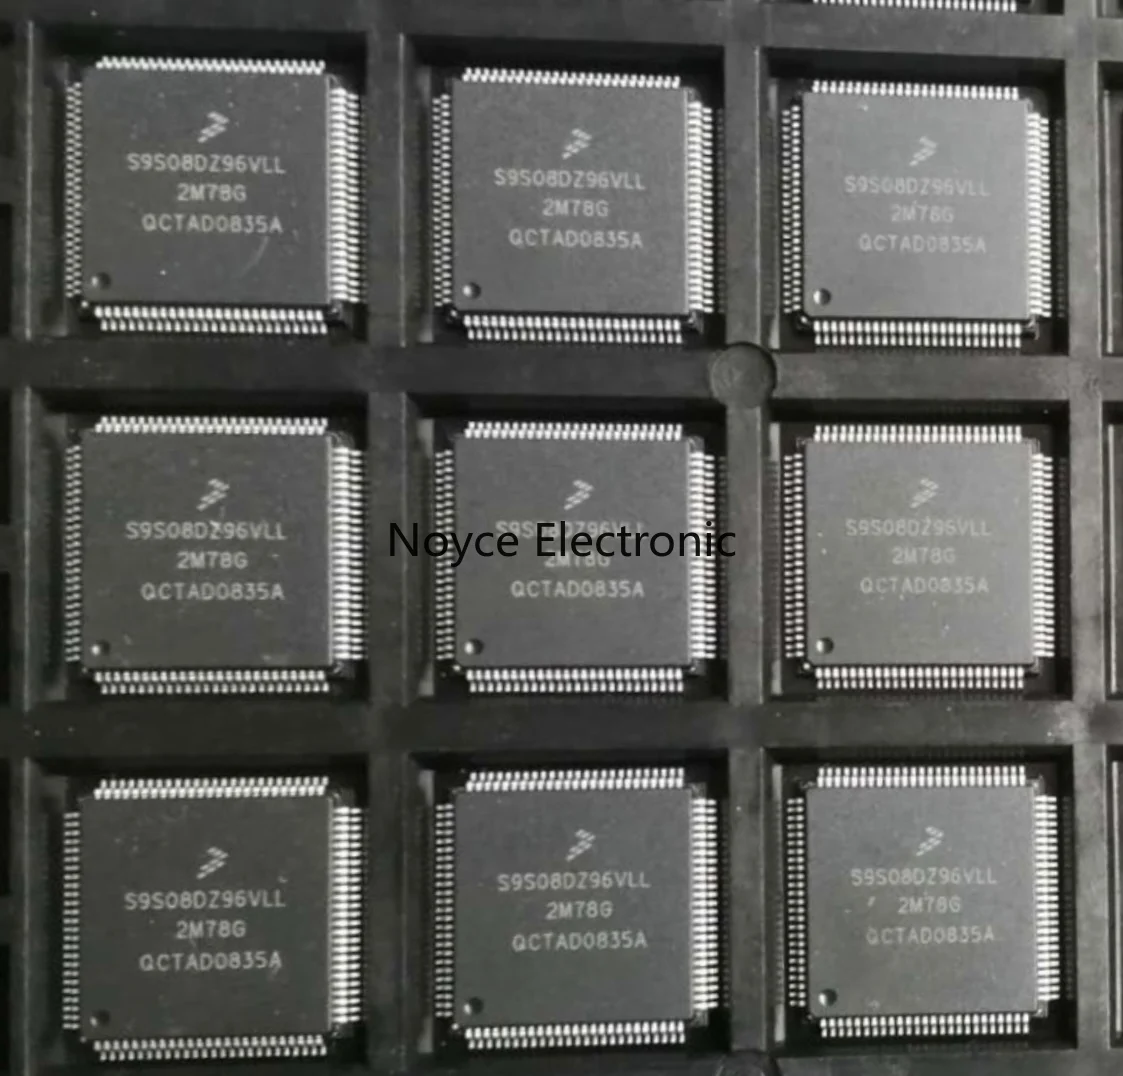 1pcs lot atsamc21n18a an atsamc21n18a tqfp100 microcontroller chips in stock 1pcs/S9S08DZ96 new original genuine spot S9S08DZ96VLL TQFP100 microcontroller chip